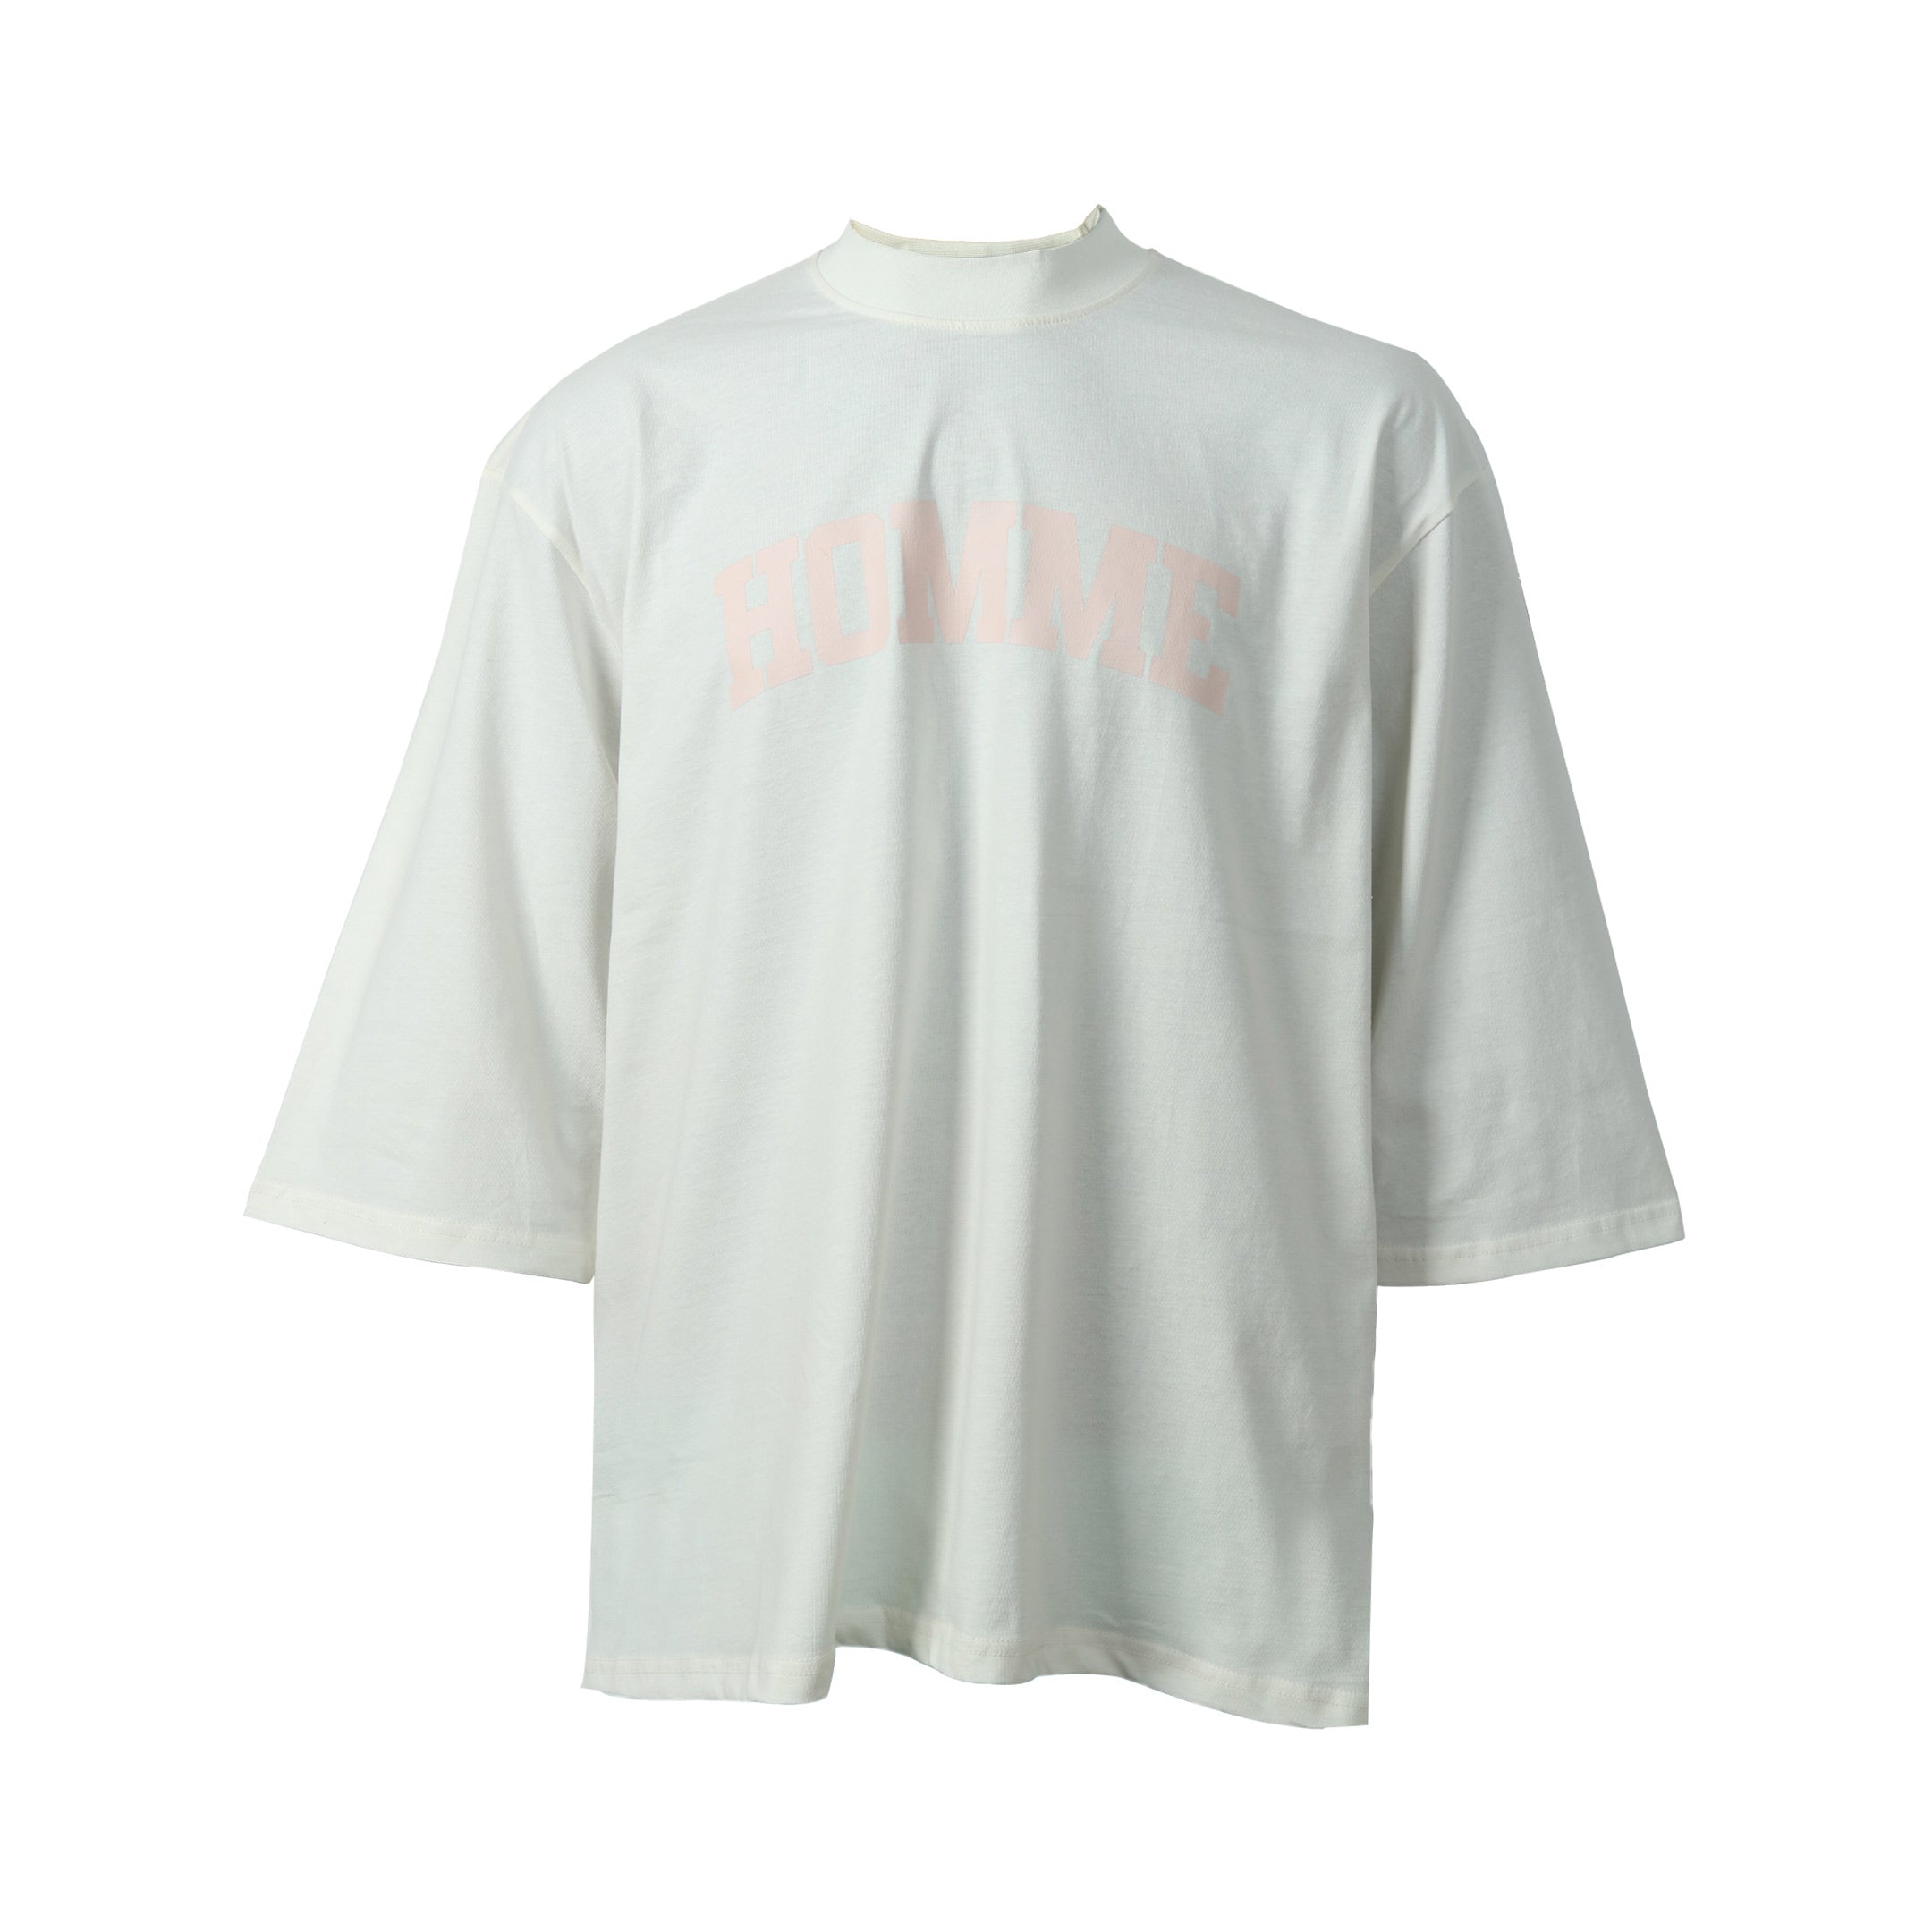 Boohoo Man T-Shirt Eckru Printed Home Style